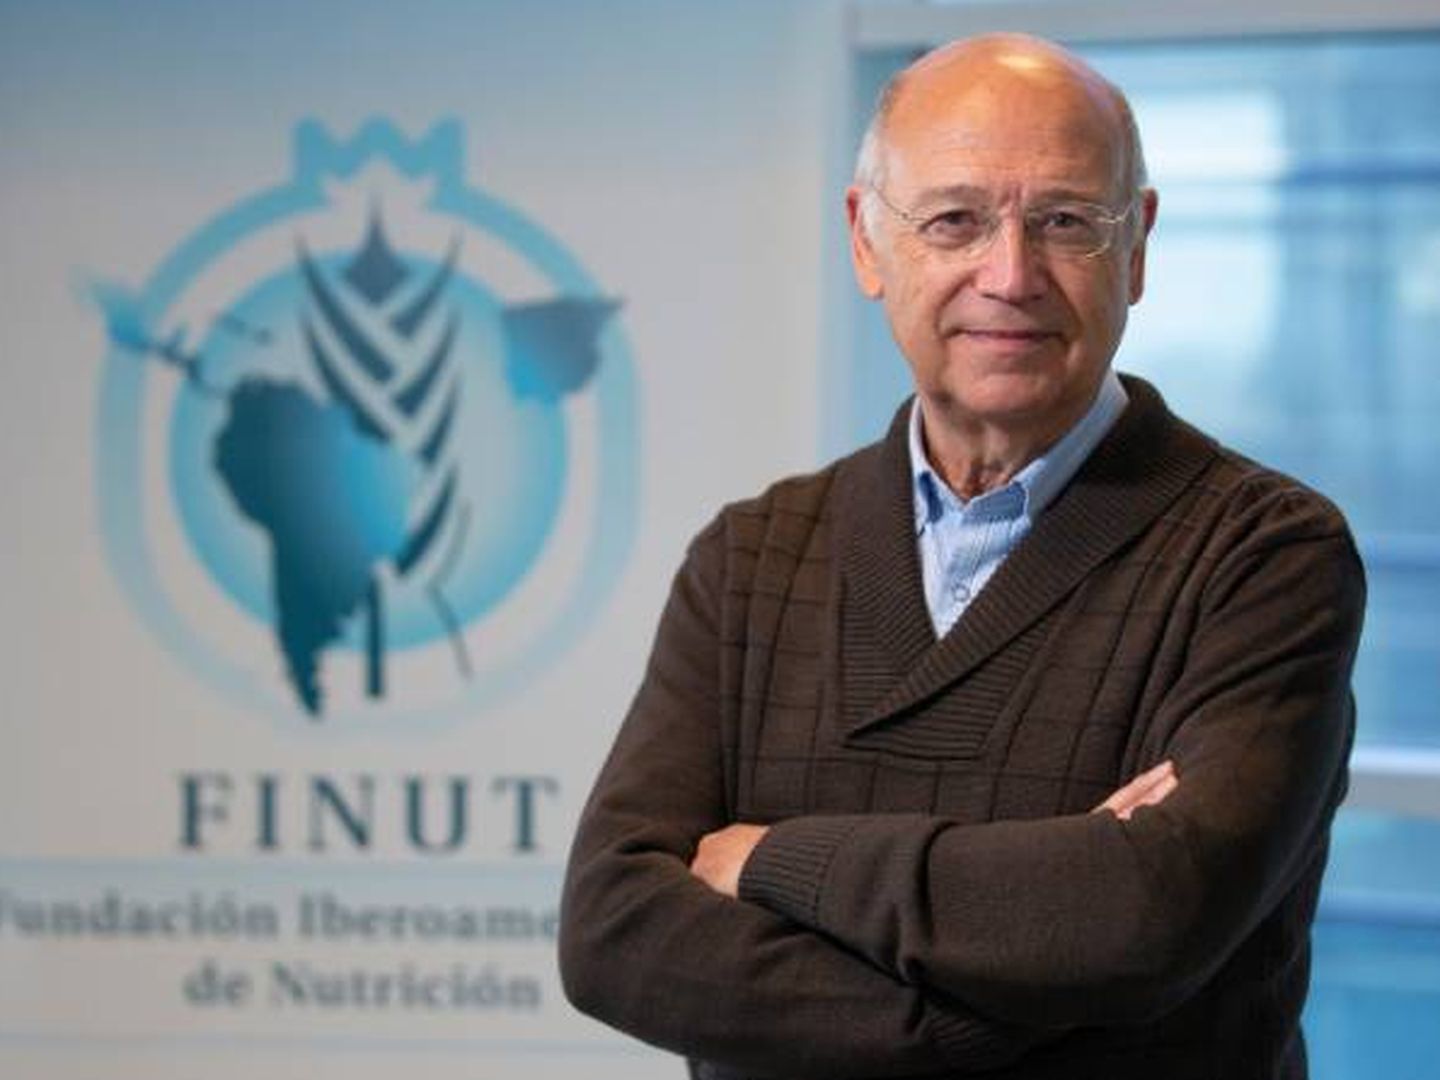 Ángel Gil, catedrático del Departamento de Bioquímica y Biología Molecular de la Universidad de Granada y presidente de la Fundación Iberoamericana de Nutrición (FINUT).